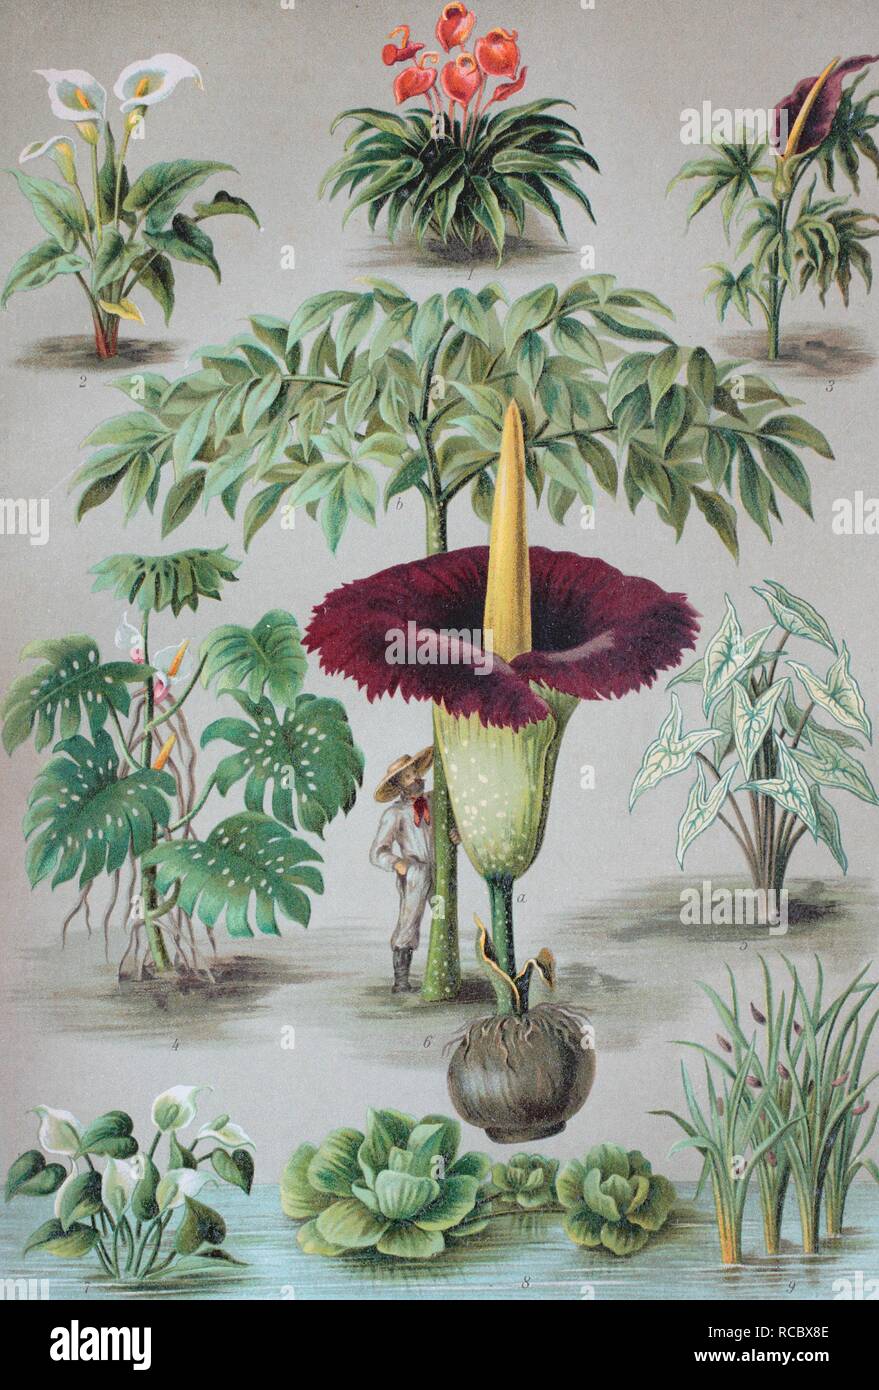 Araceae or the Arum family, 1. Anthurium, 2. Zantedeschia, 3. Dracunculus, 4. Monstera, 5. Caladium, 6. Amorphophallus, 7. Stock Photo